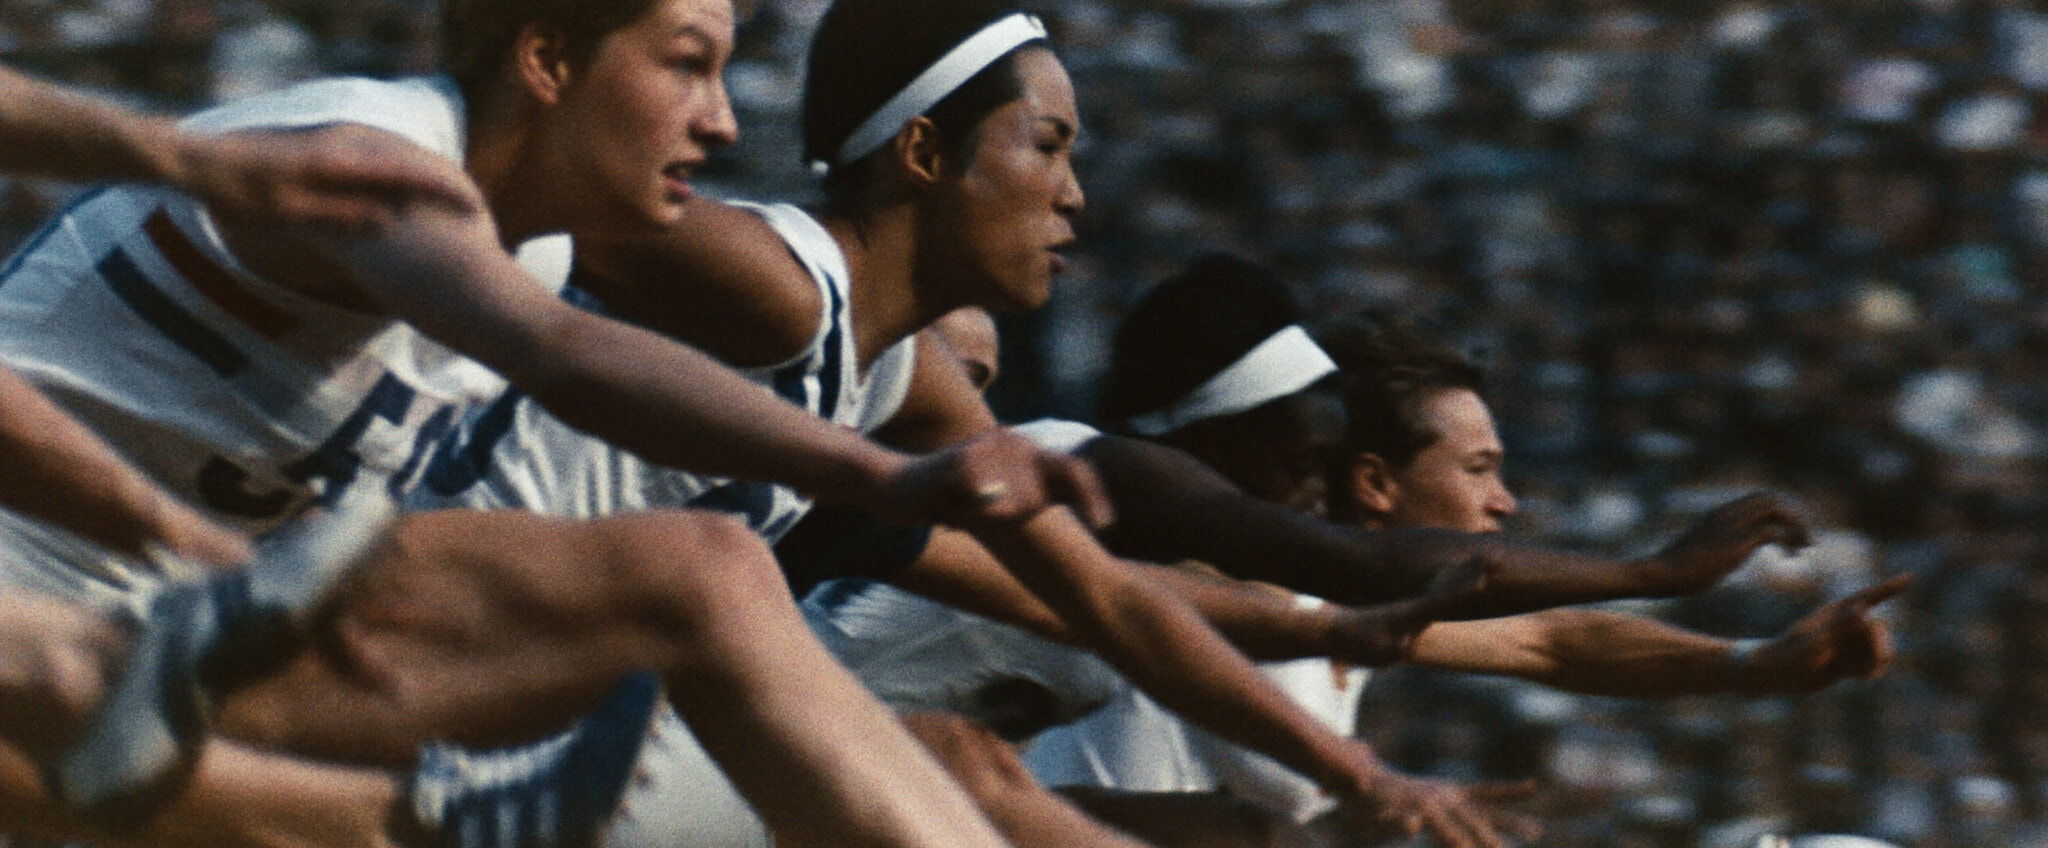 纪录片《东京奥运会》中的场景